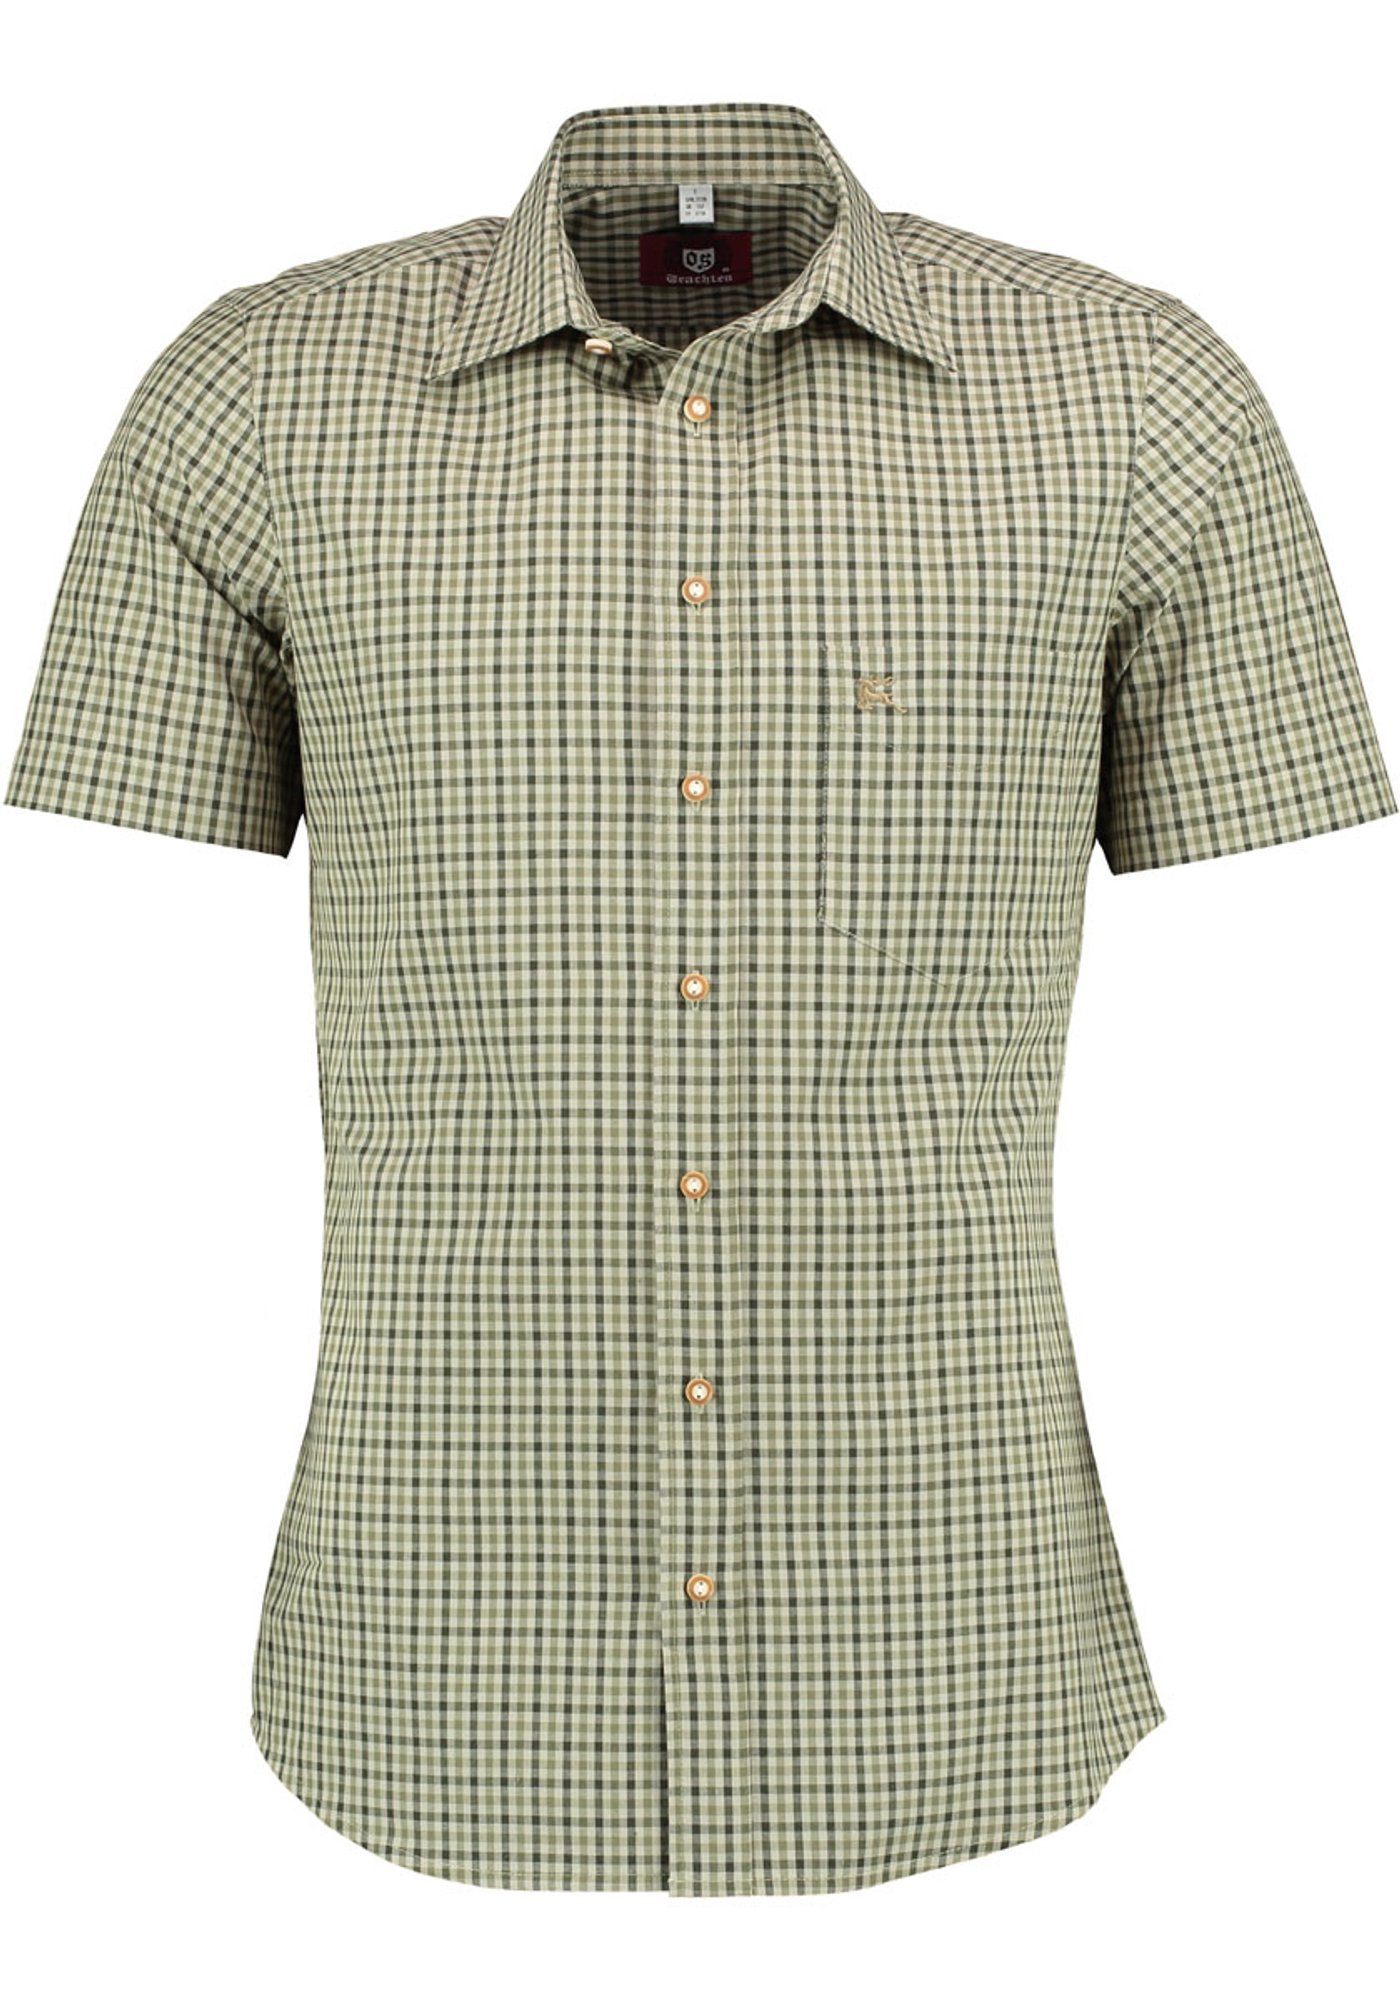 OS-Trachten Trachtenhemd Purli Kurzarmhemd auf Brusttasche dunkelgrün mit Hirsch-Stickerei der